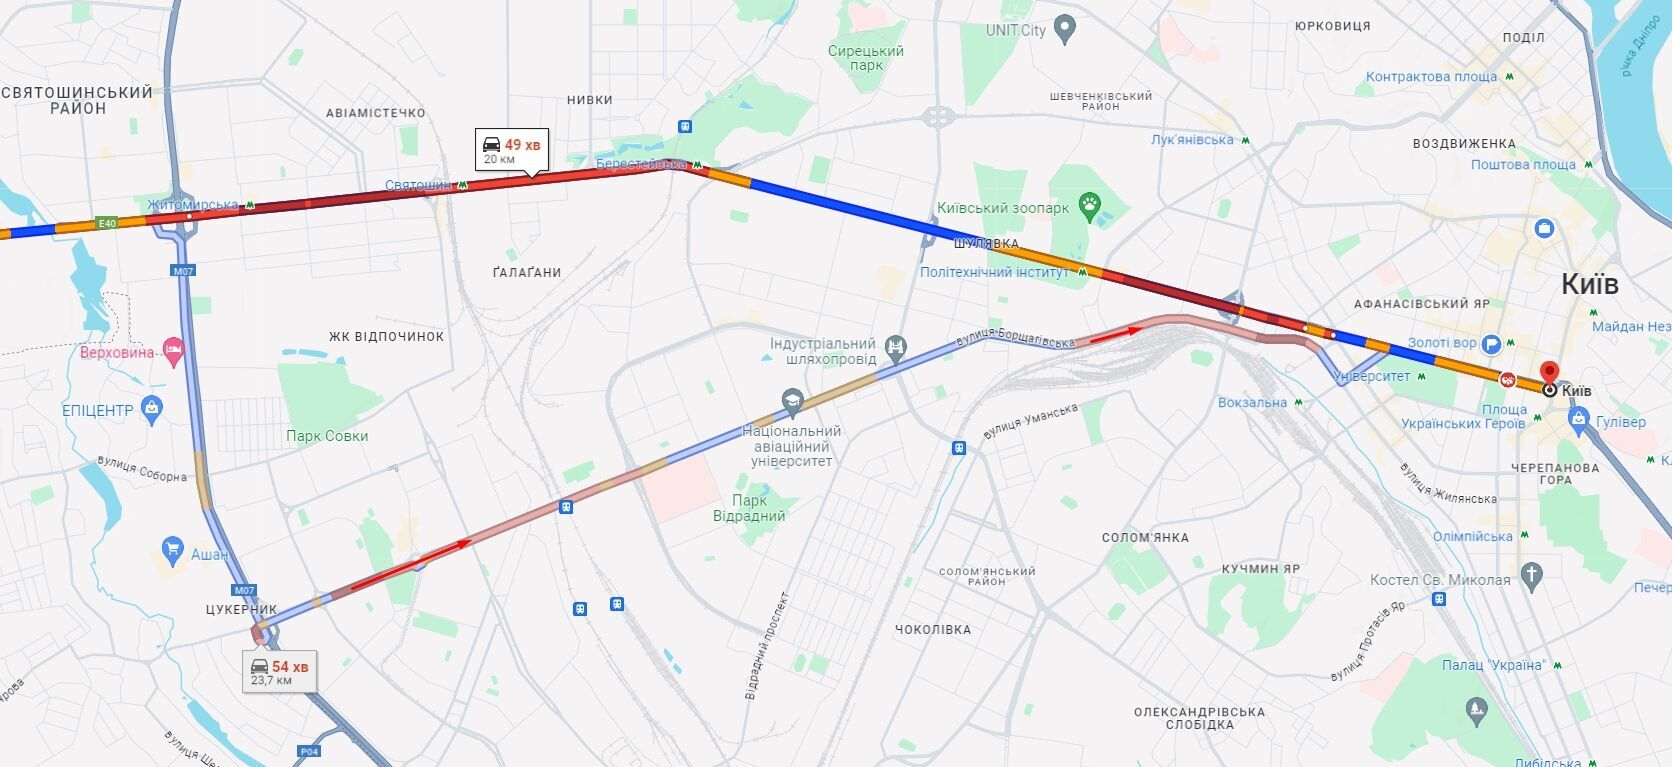 На дорогах Києва вранці утворились затори: де не проїхати. Карта